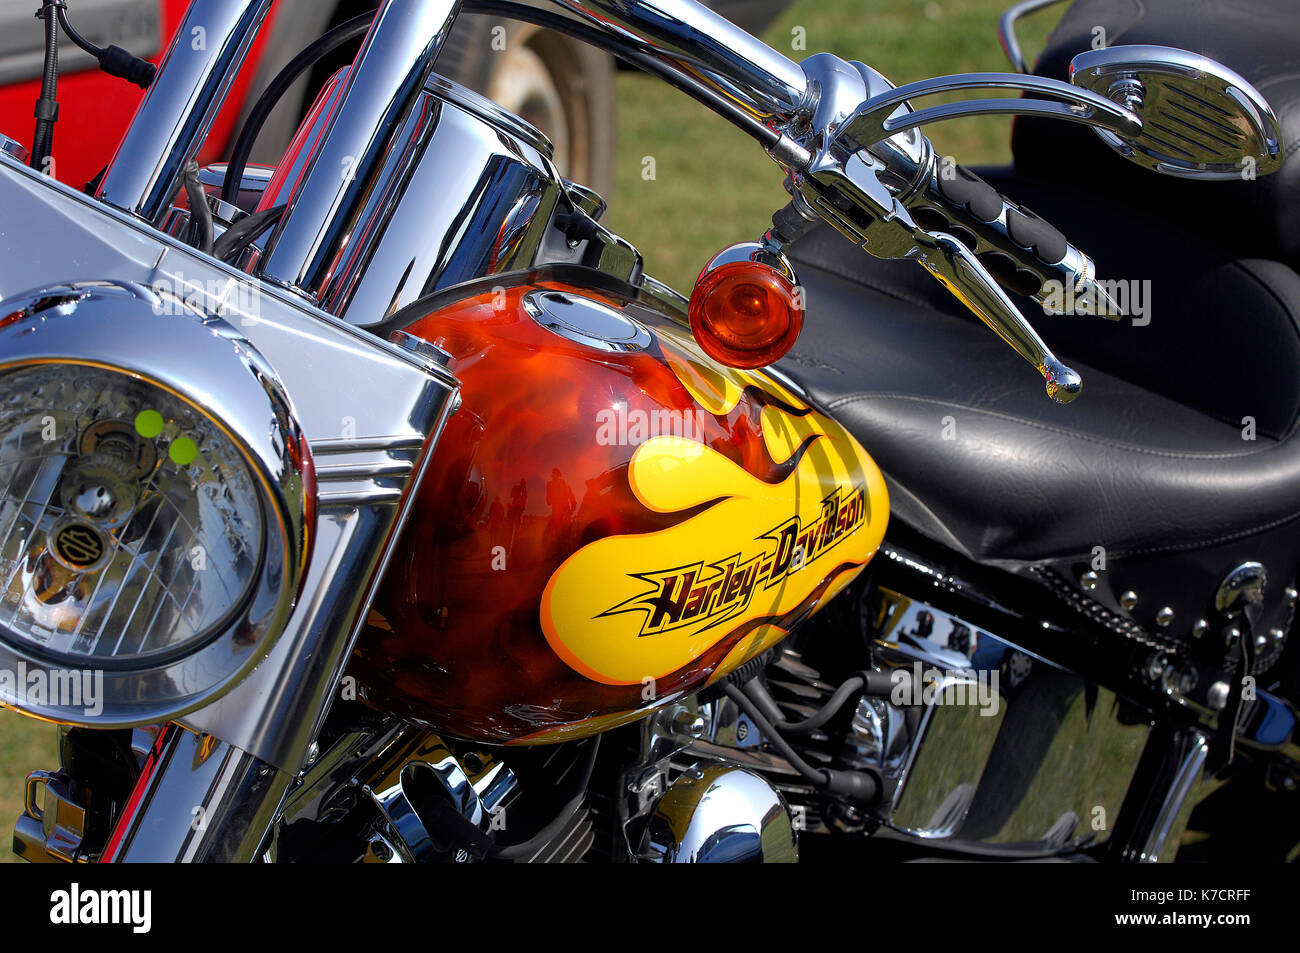 Une moto Harley Davidson Chopper avec un design flamme airbrushed travail de peinture sur le réservoir de carburant. Choppers moto et vélos sur mesure. Harley. Banque D'Images